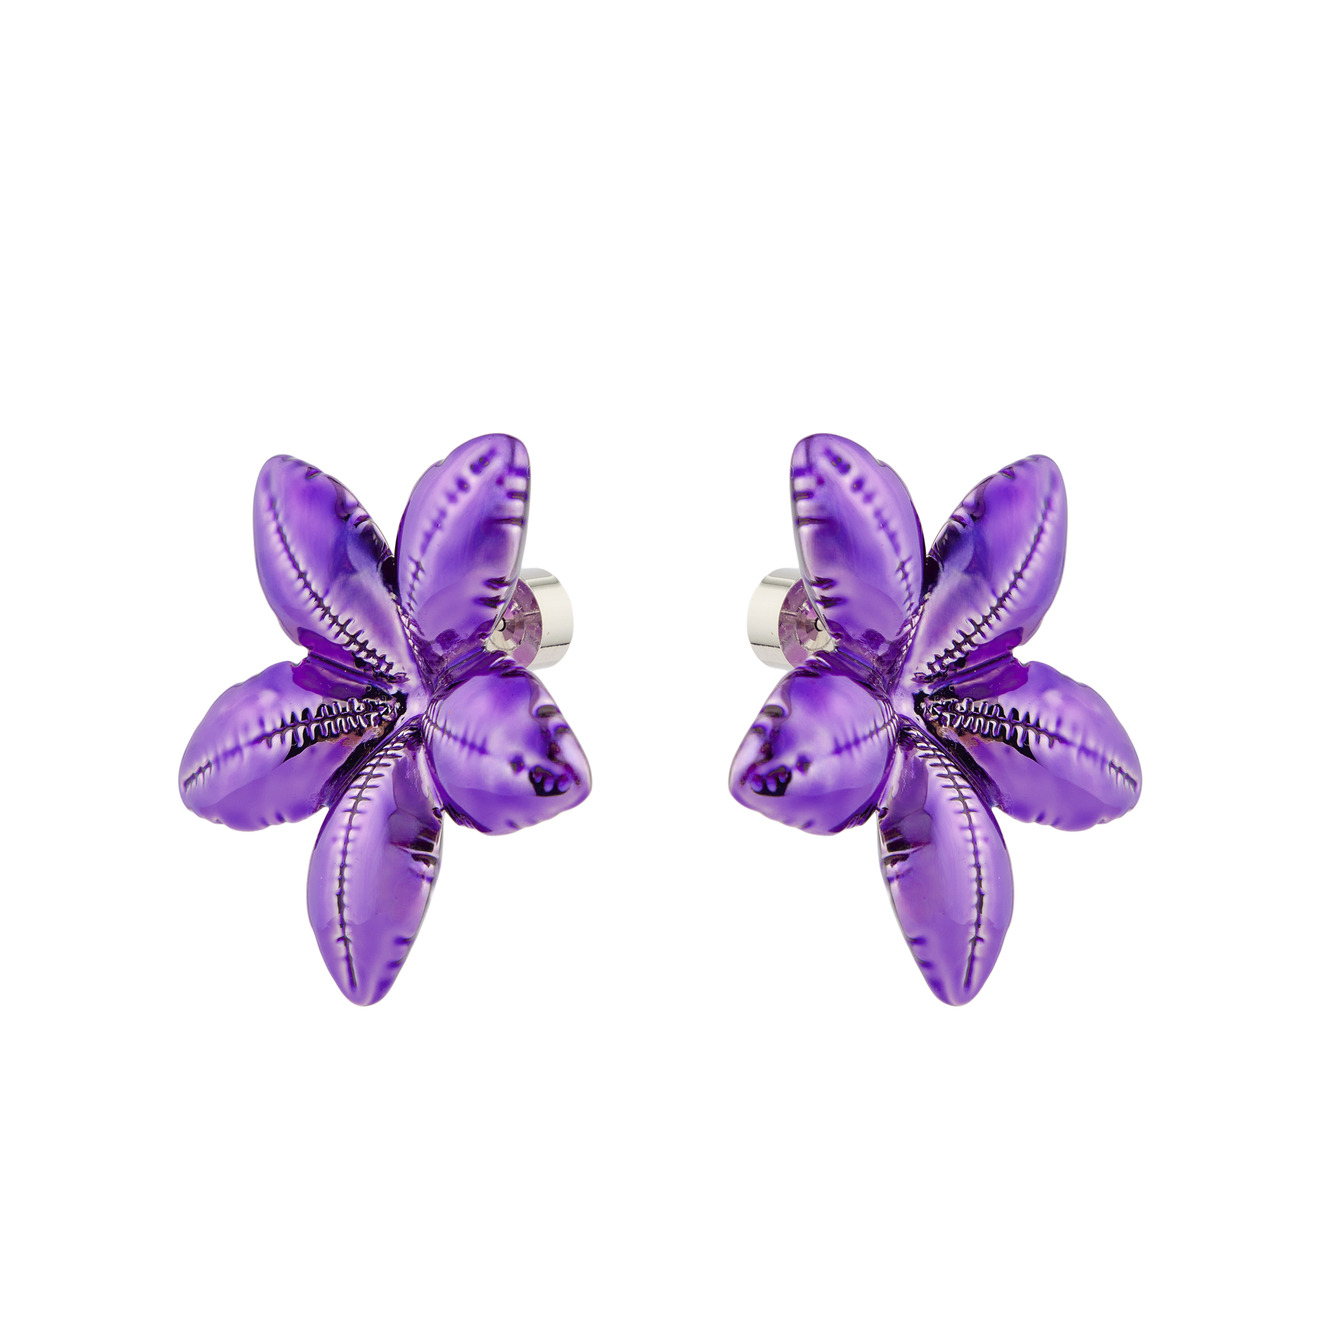 marni серебристые серьги клипсы с шарообразными цветками Marni Фиолетовые серьги с пышными цветками